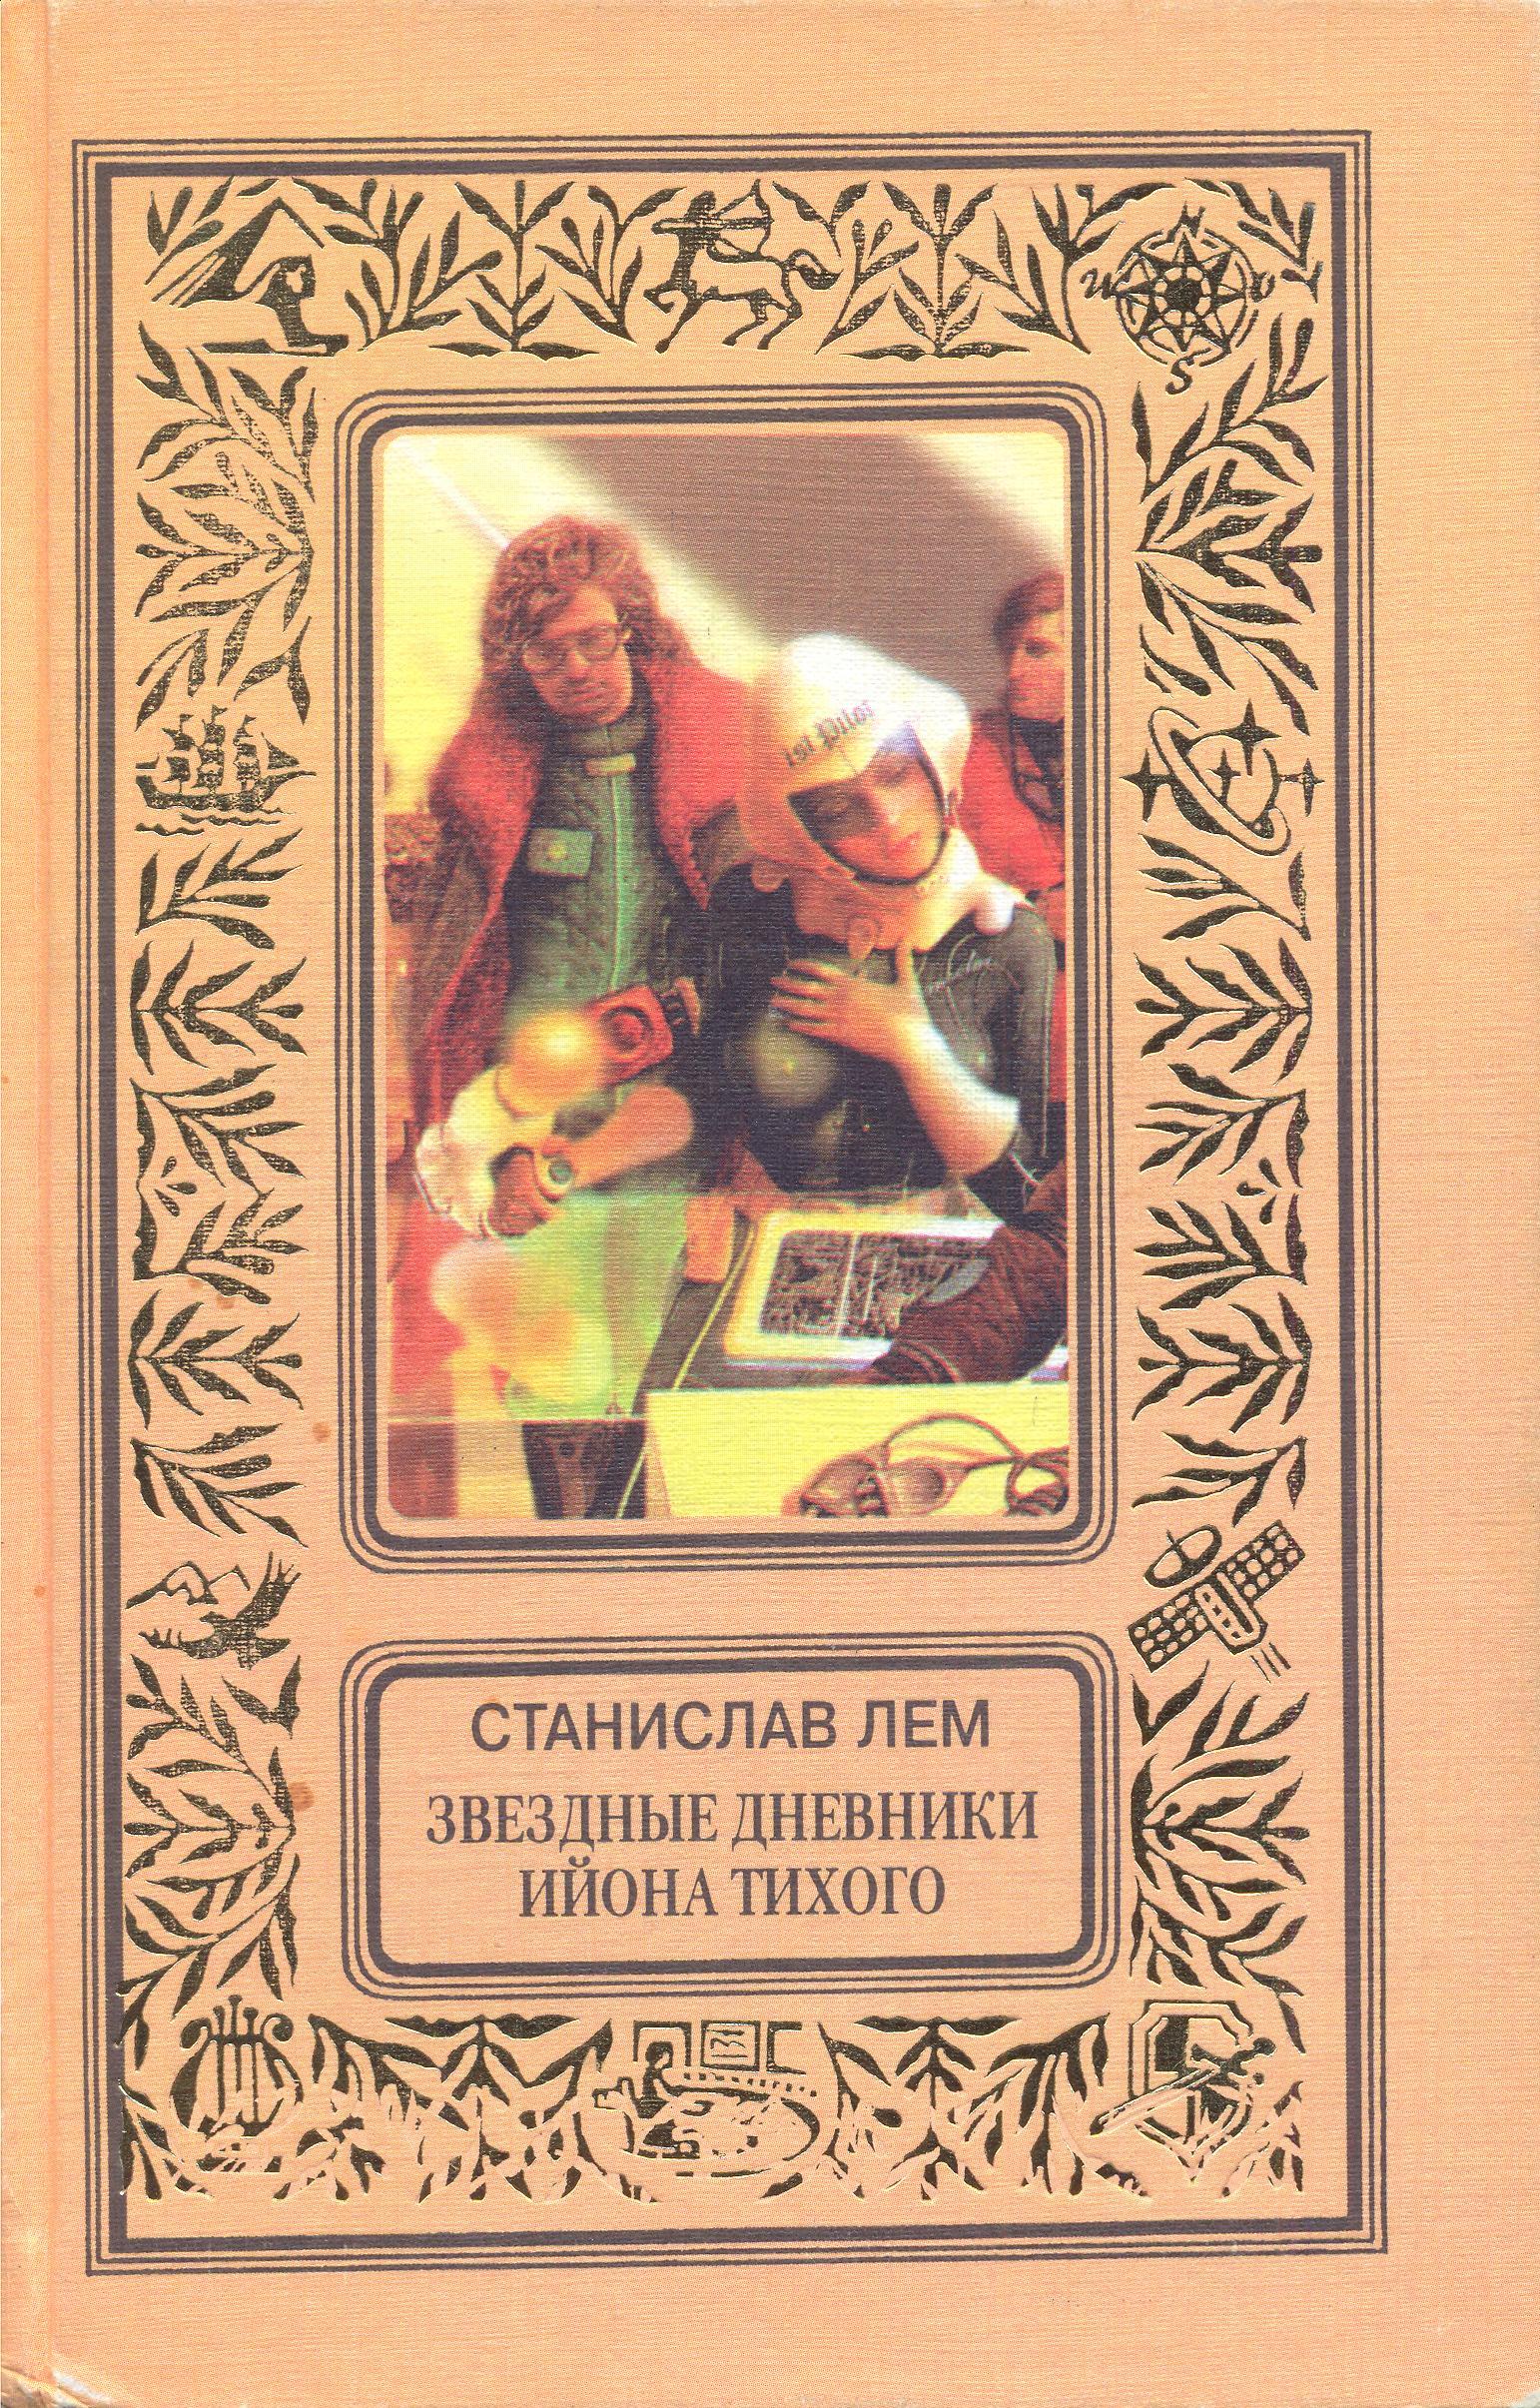 Star Diaries Russian Tekst-EKSMO 1998.jpg